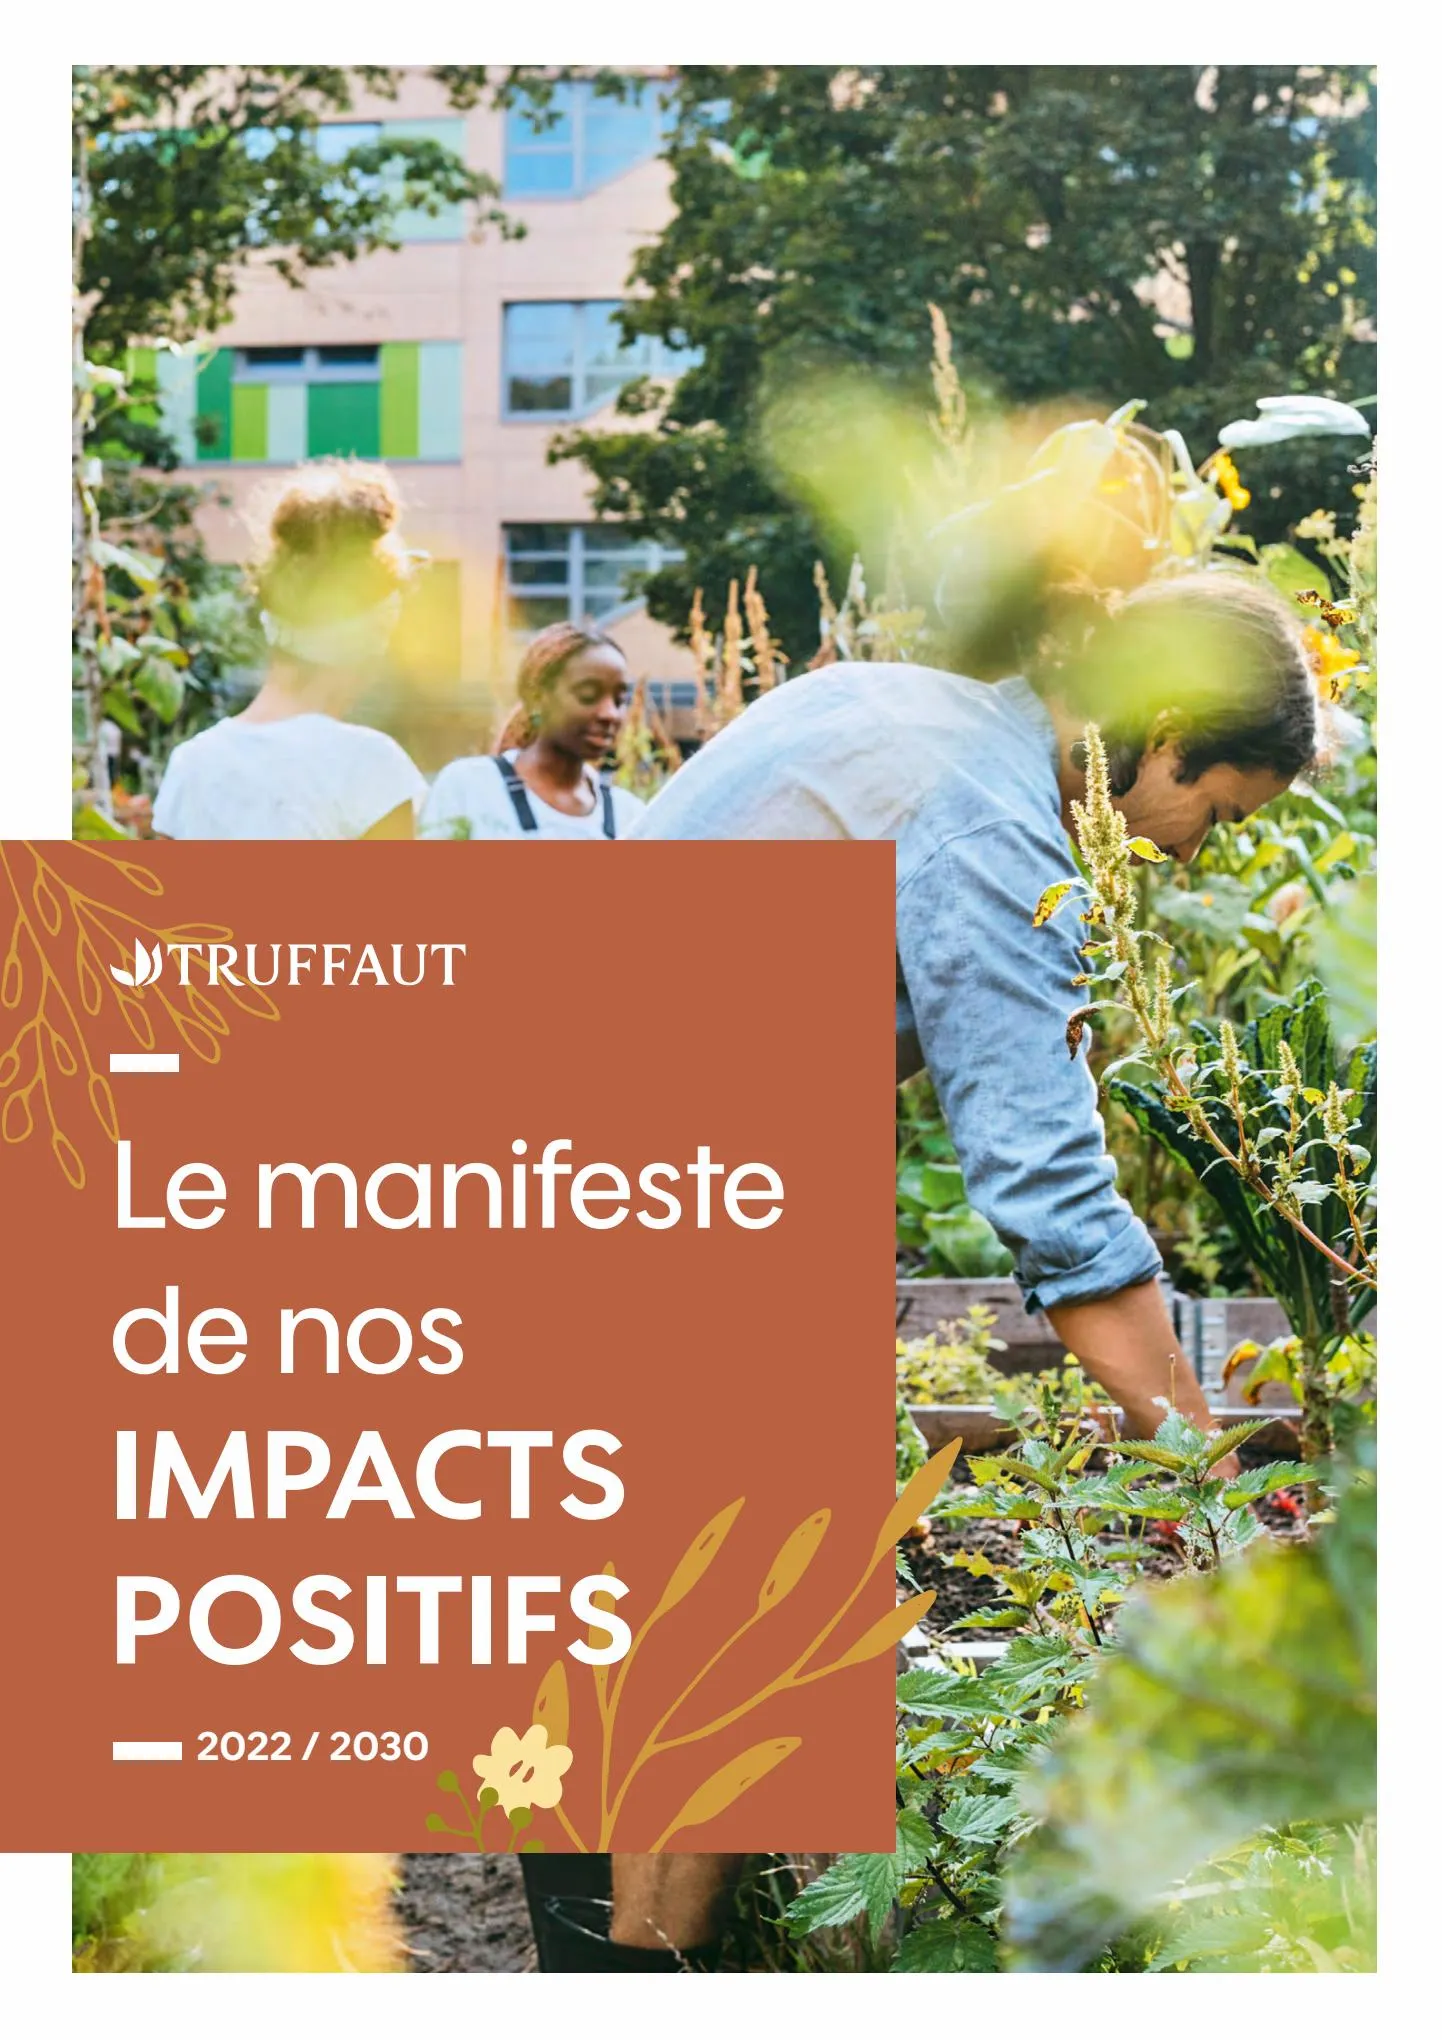 Catalogue Impacts Positifs Truffaut, page 00001